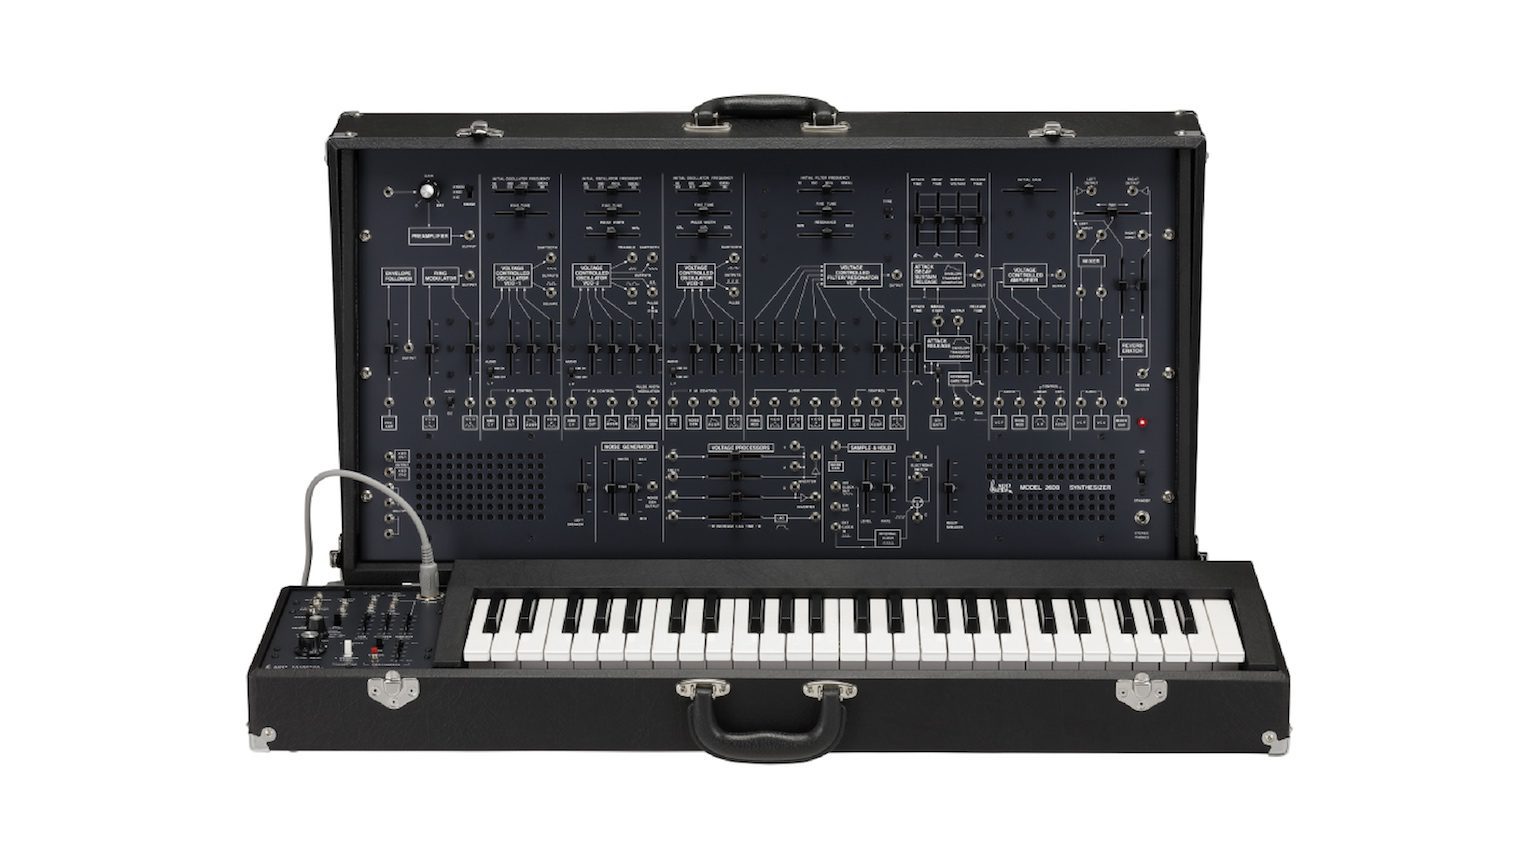 Der ARP 2600 Synthesizer